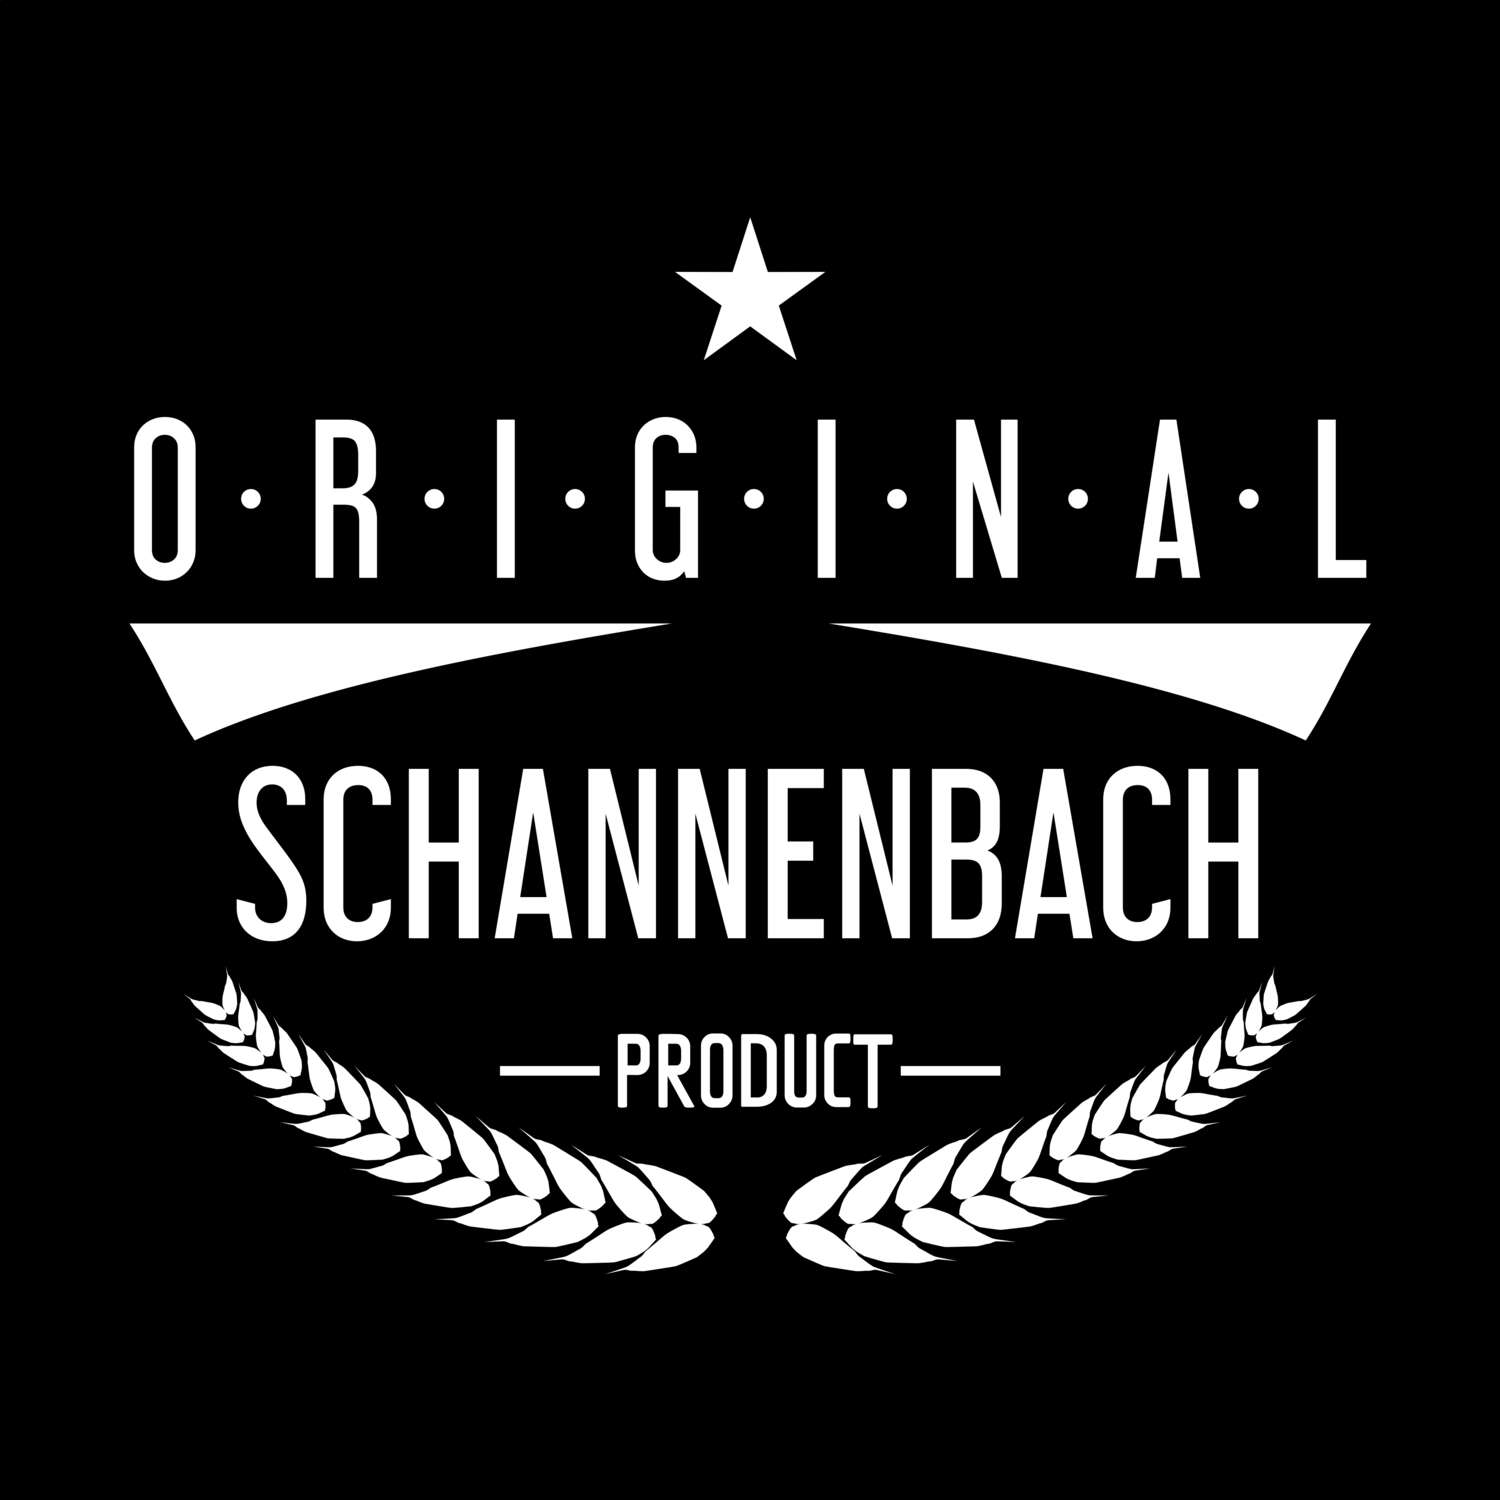 Schannenbach T-Shirt »Original Product«